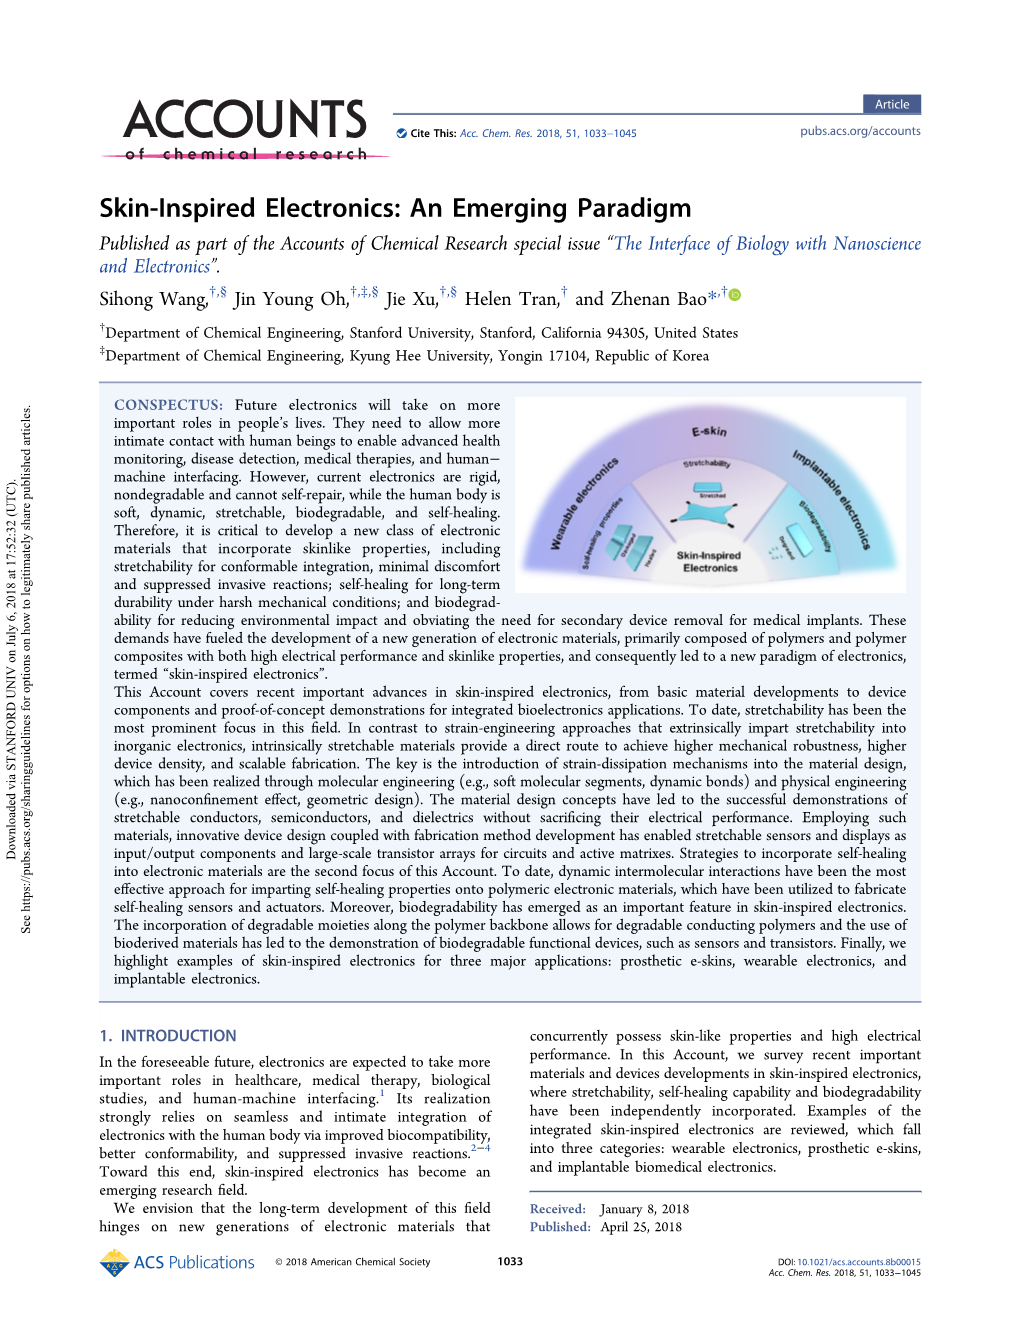 Skin-Inspired Electronics: an Emerging Paradigm